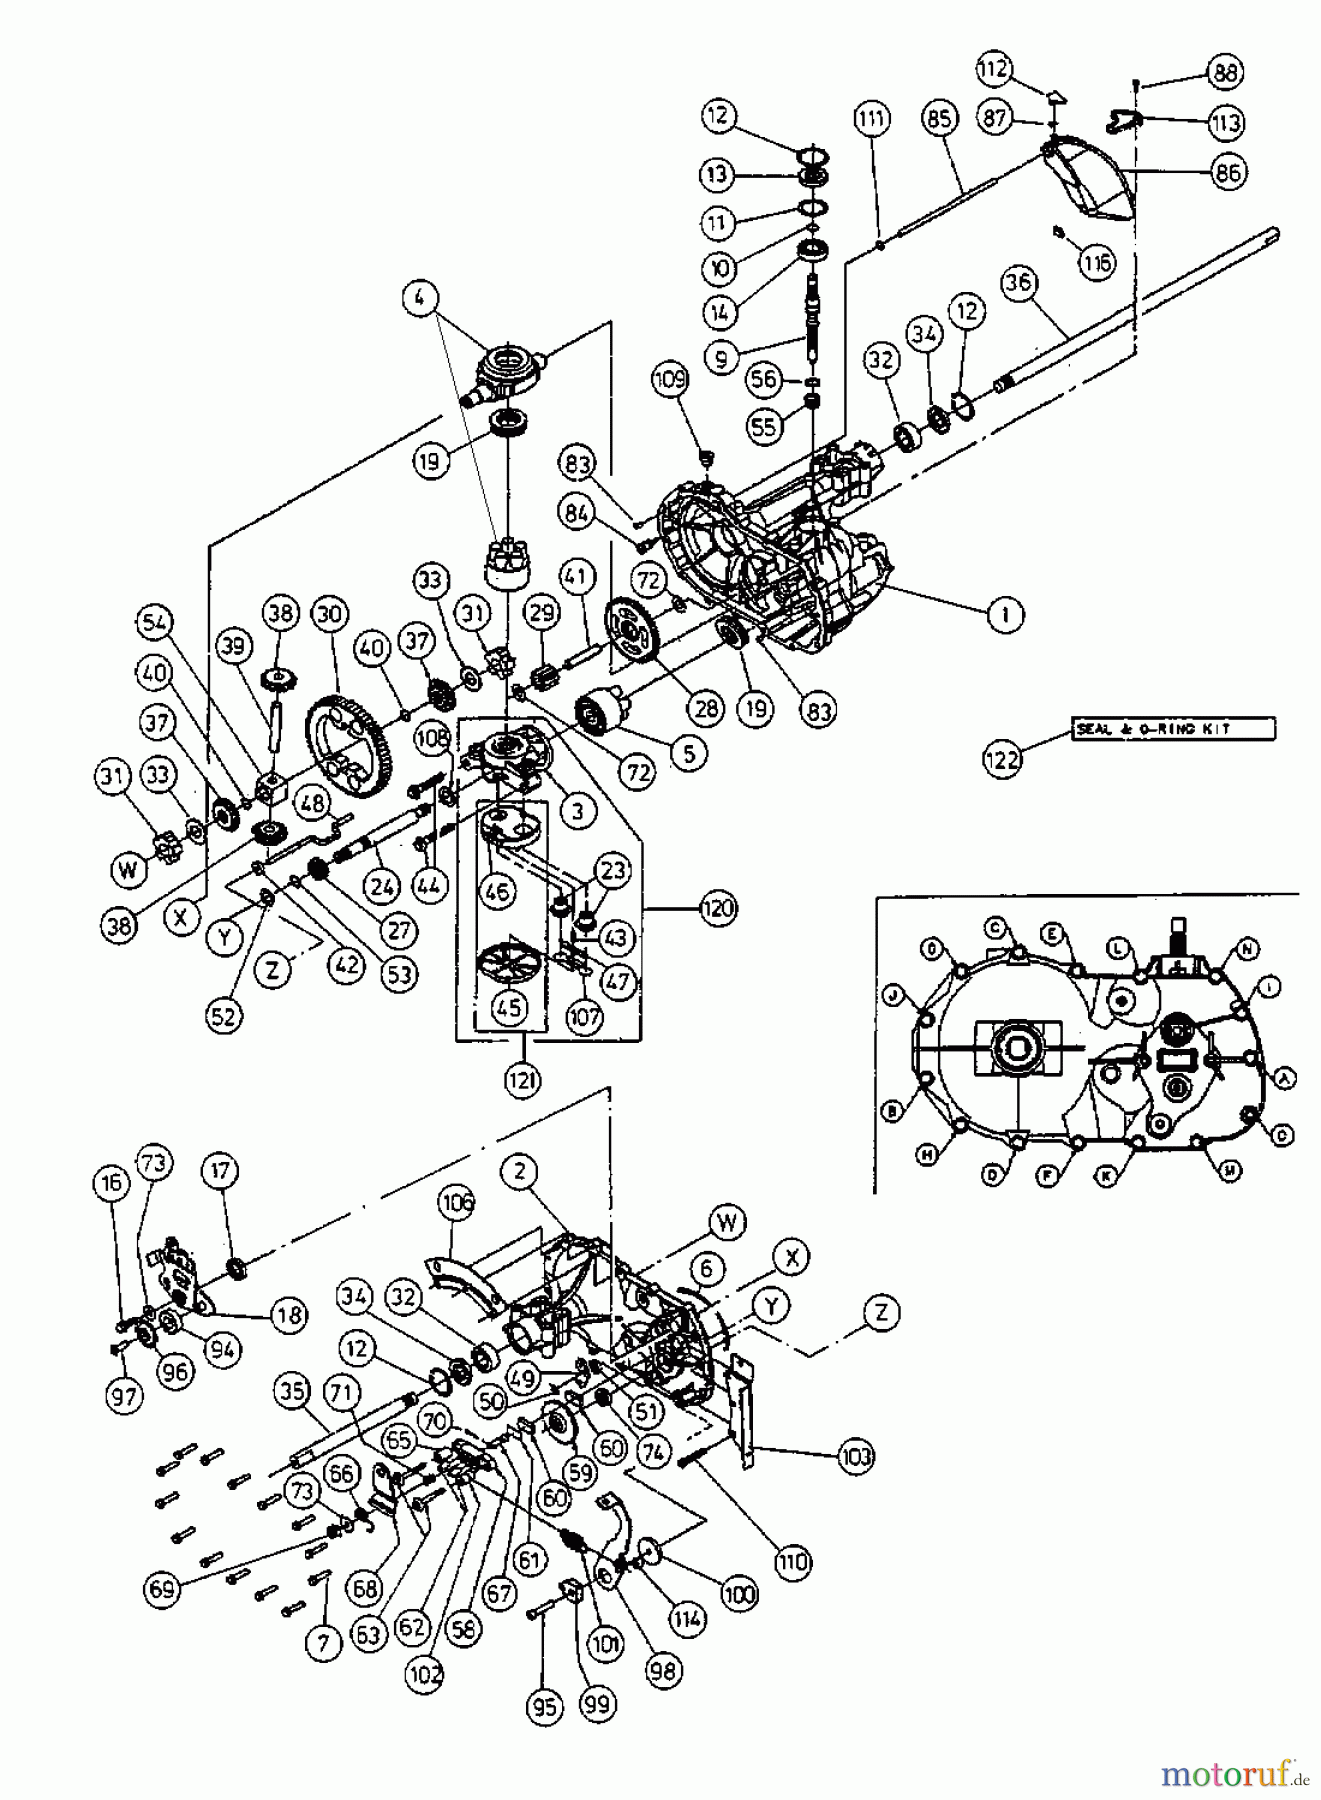  Yard-Man Lawn tractors HA 4130 13AC414A643  (2003) Hydrostatic gearbox